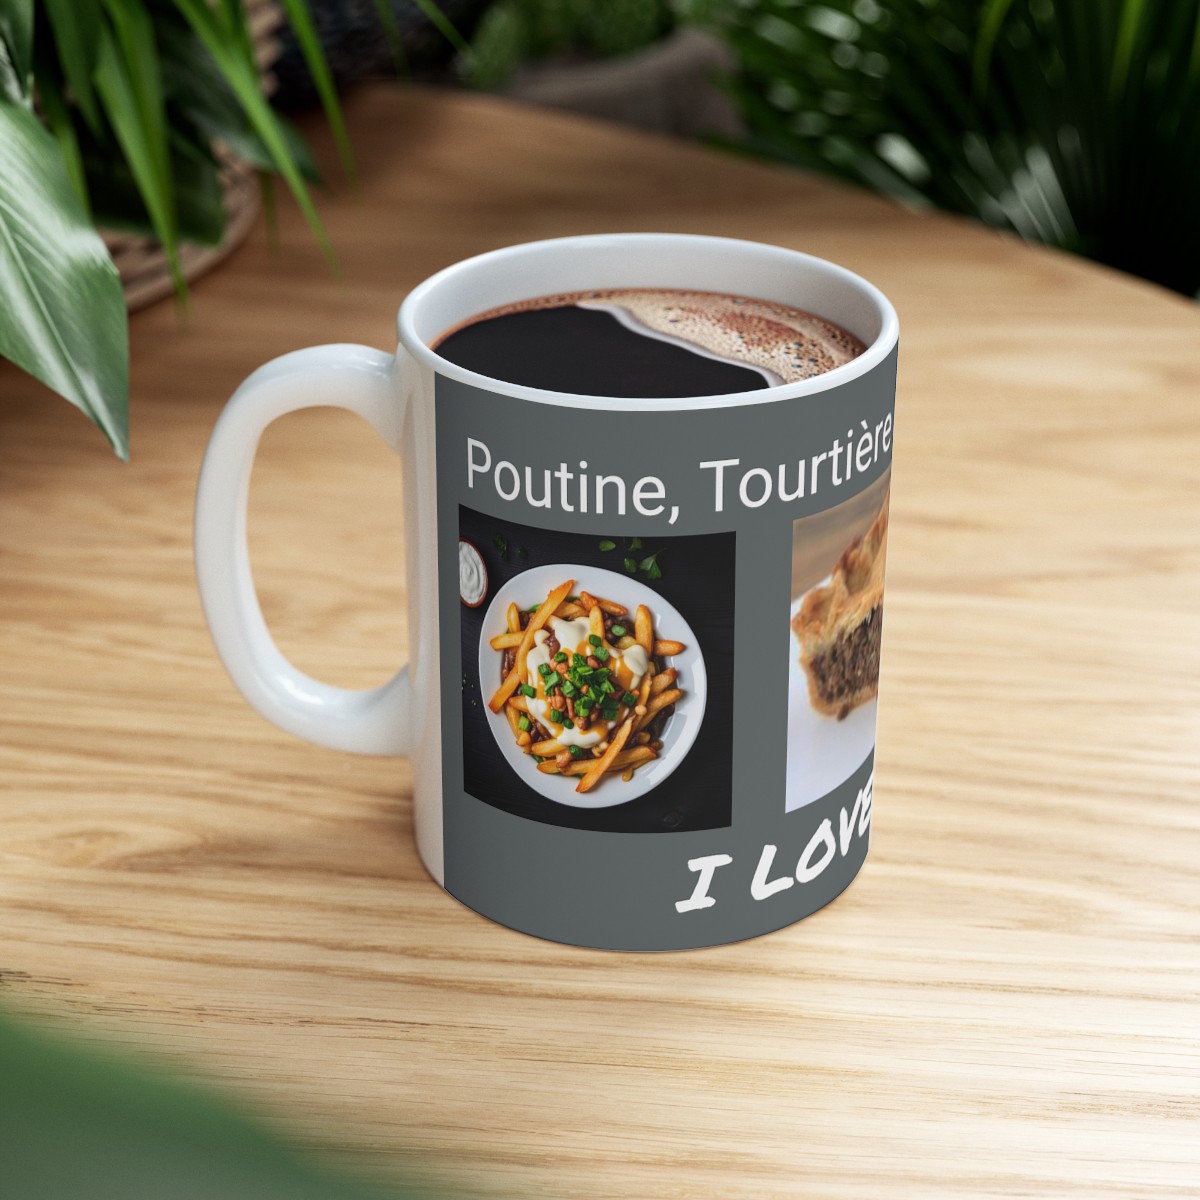 Poutine, Tourtière and Tarte au Sucre - I Love Québec! - Ceramic Mug 11oz product main image